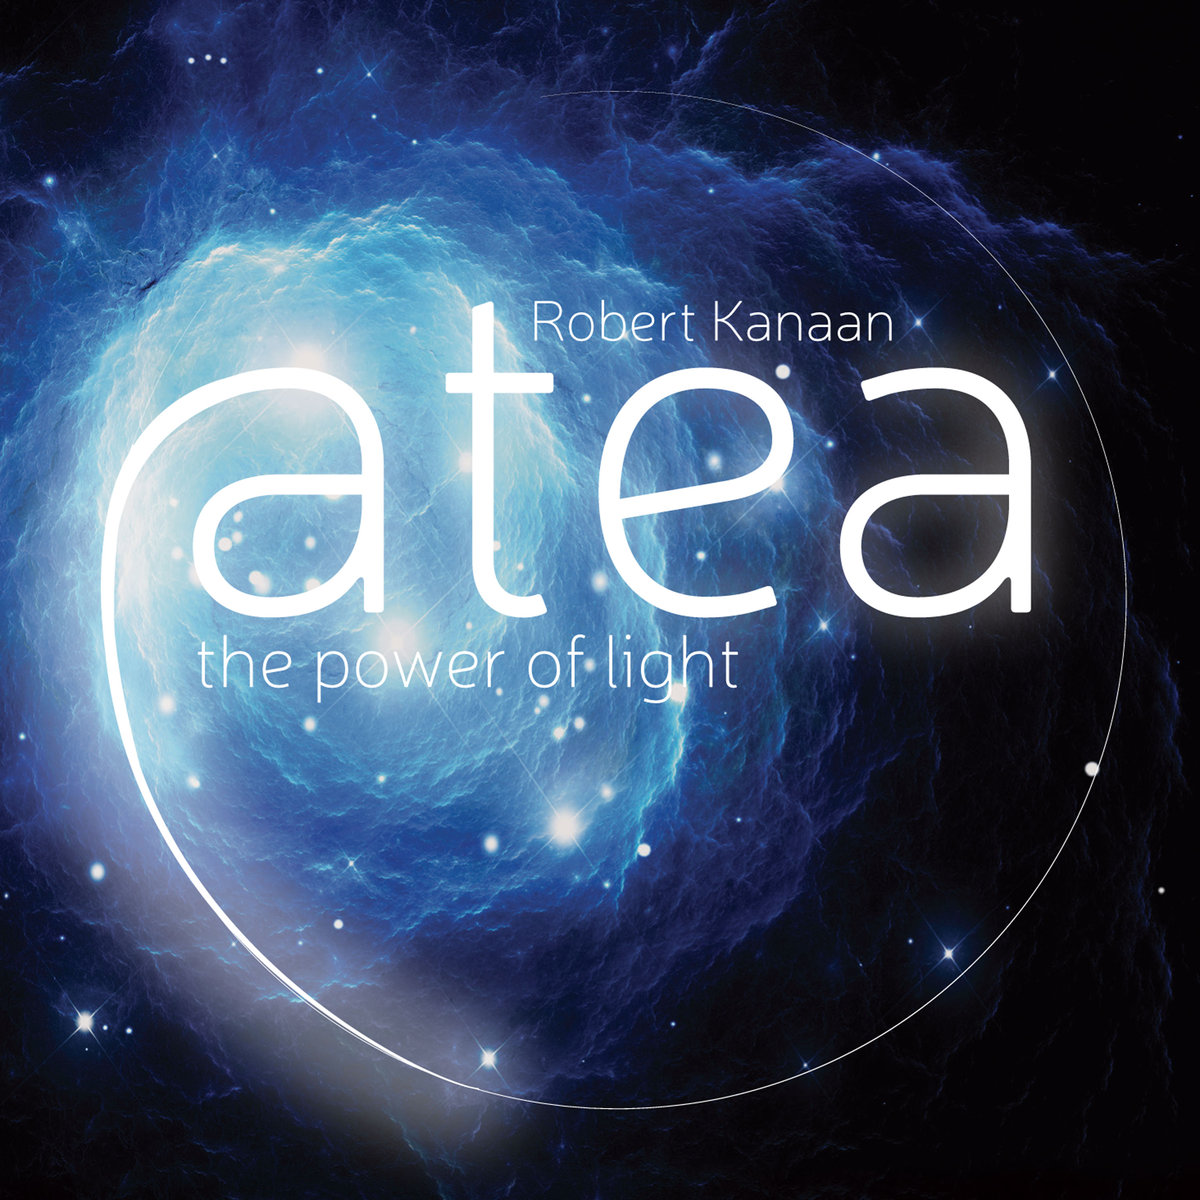 ROBERT KANAAN proponuje najnowszą płytę „Atea”, powstałą z inspiracji światłem